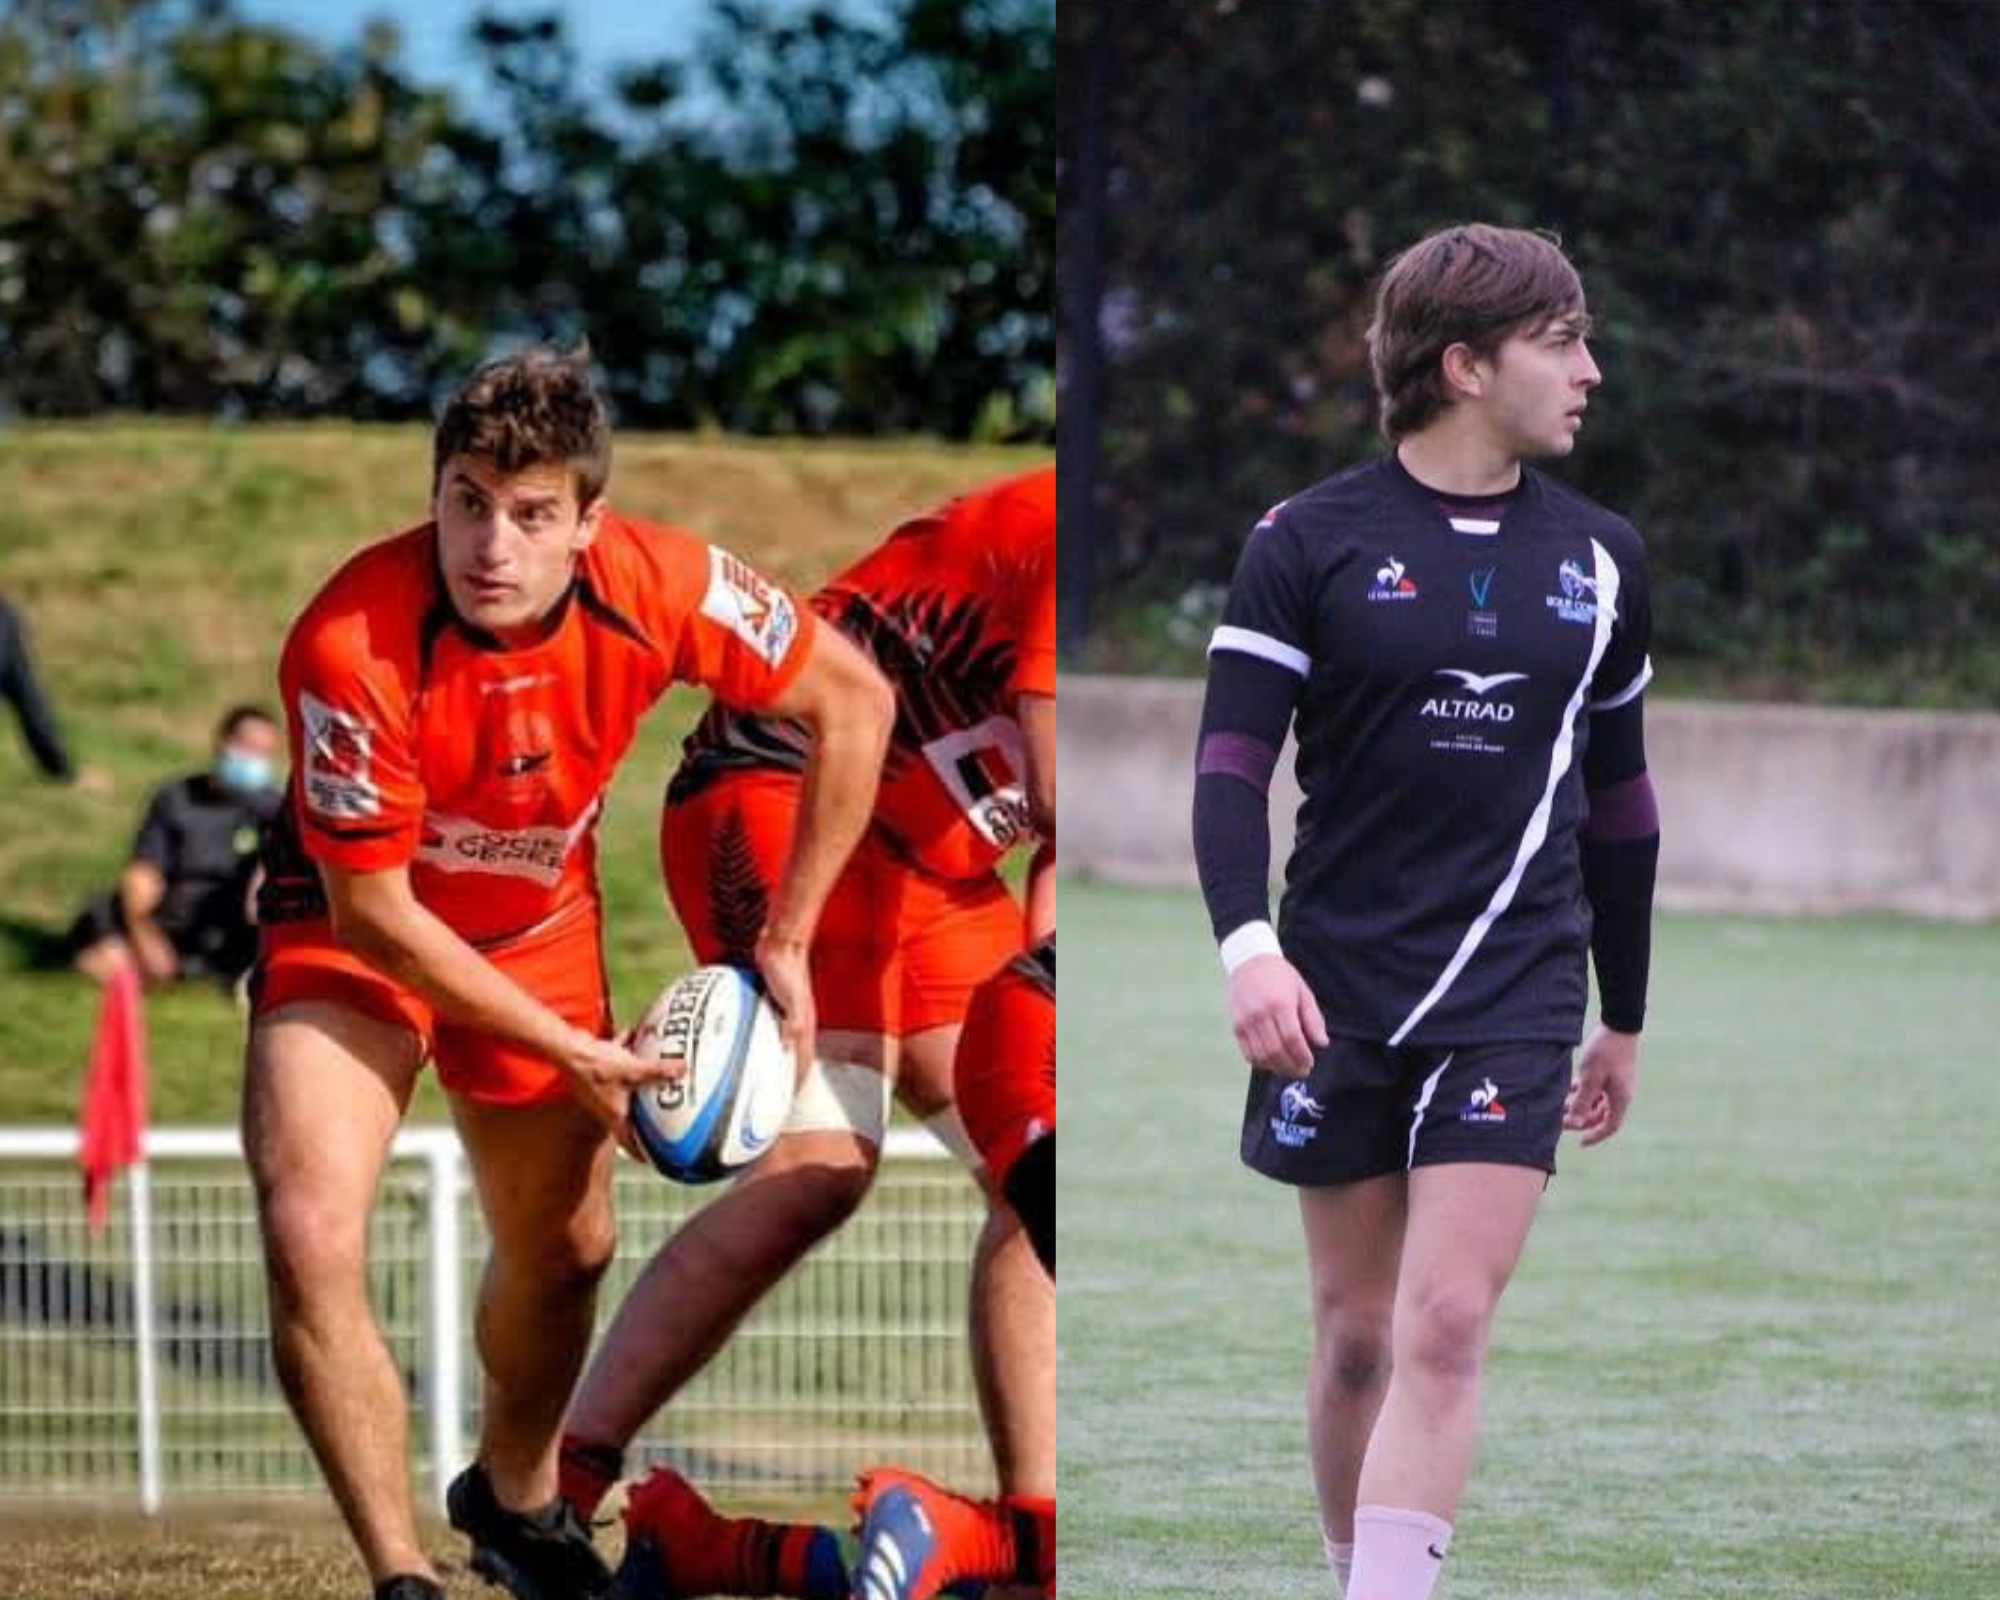 Jérémi Loubic (à gauche) et Lothaire Adobati (à droite) ont été sélectionnés par le Montpellier Hérault Rugby pour participer au Super Seven, une compétition de rugby professionnelle. (Photo Facebook de SLMJ photos)